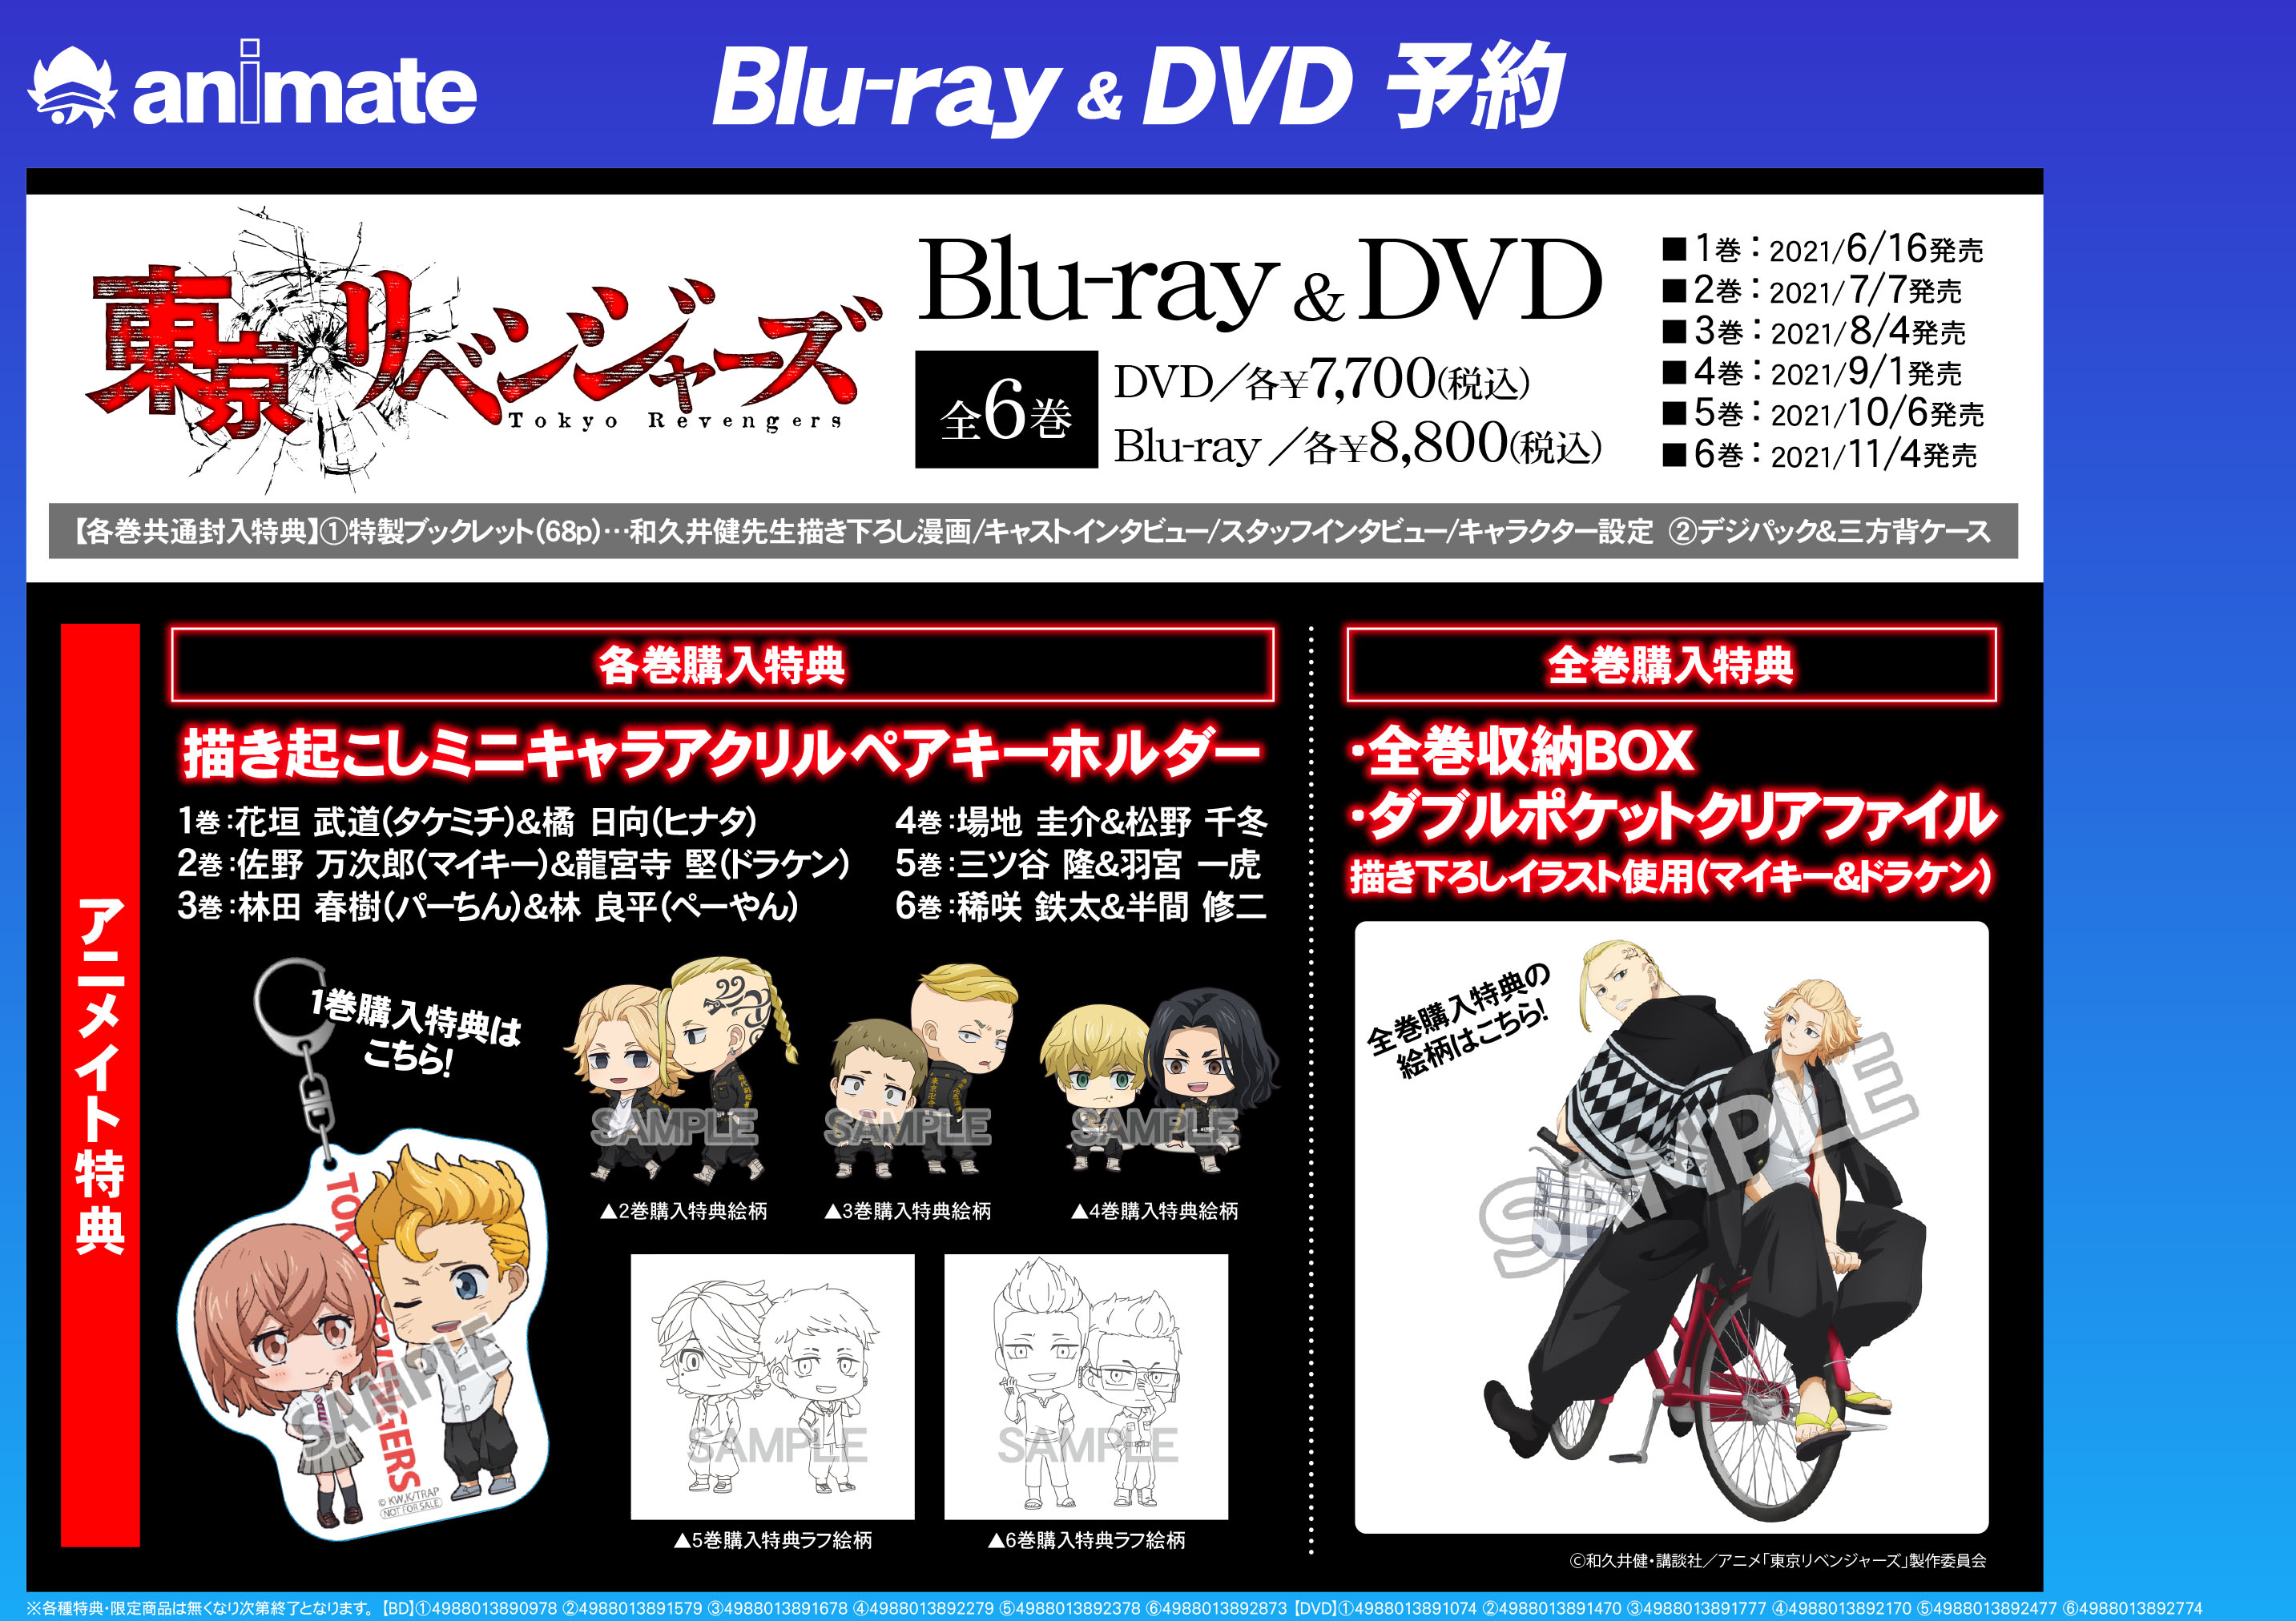 日本 東京リベンジャーズ DVD 特典ケース付6巻セット 3broadwaybistro.com